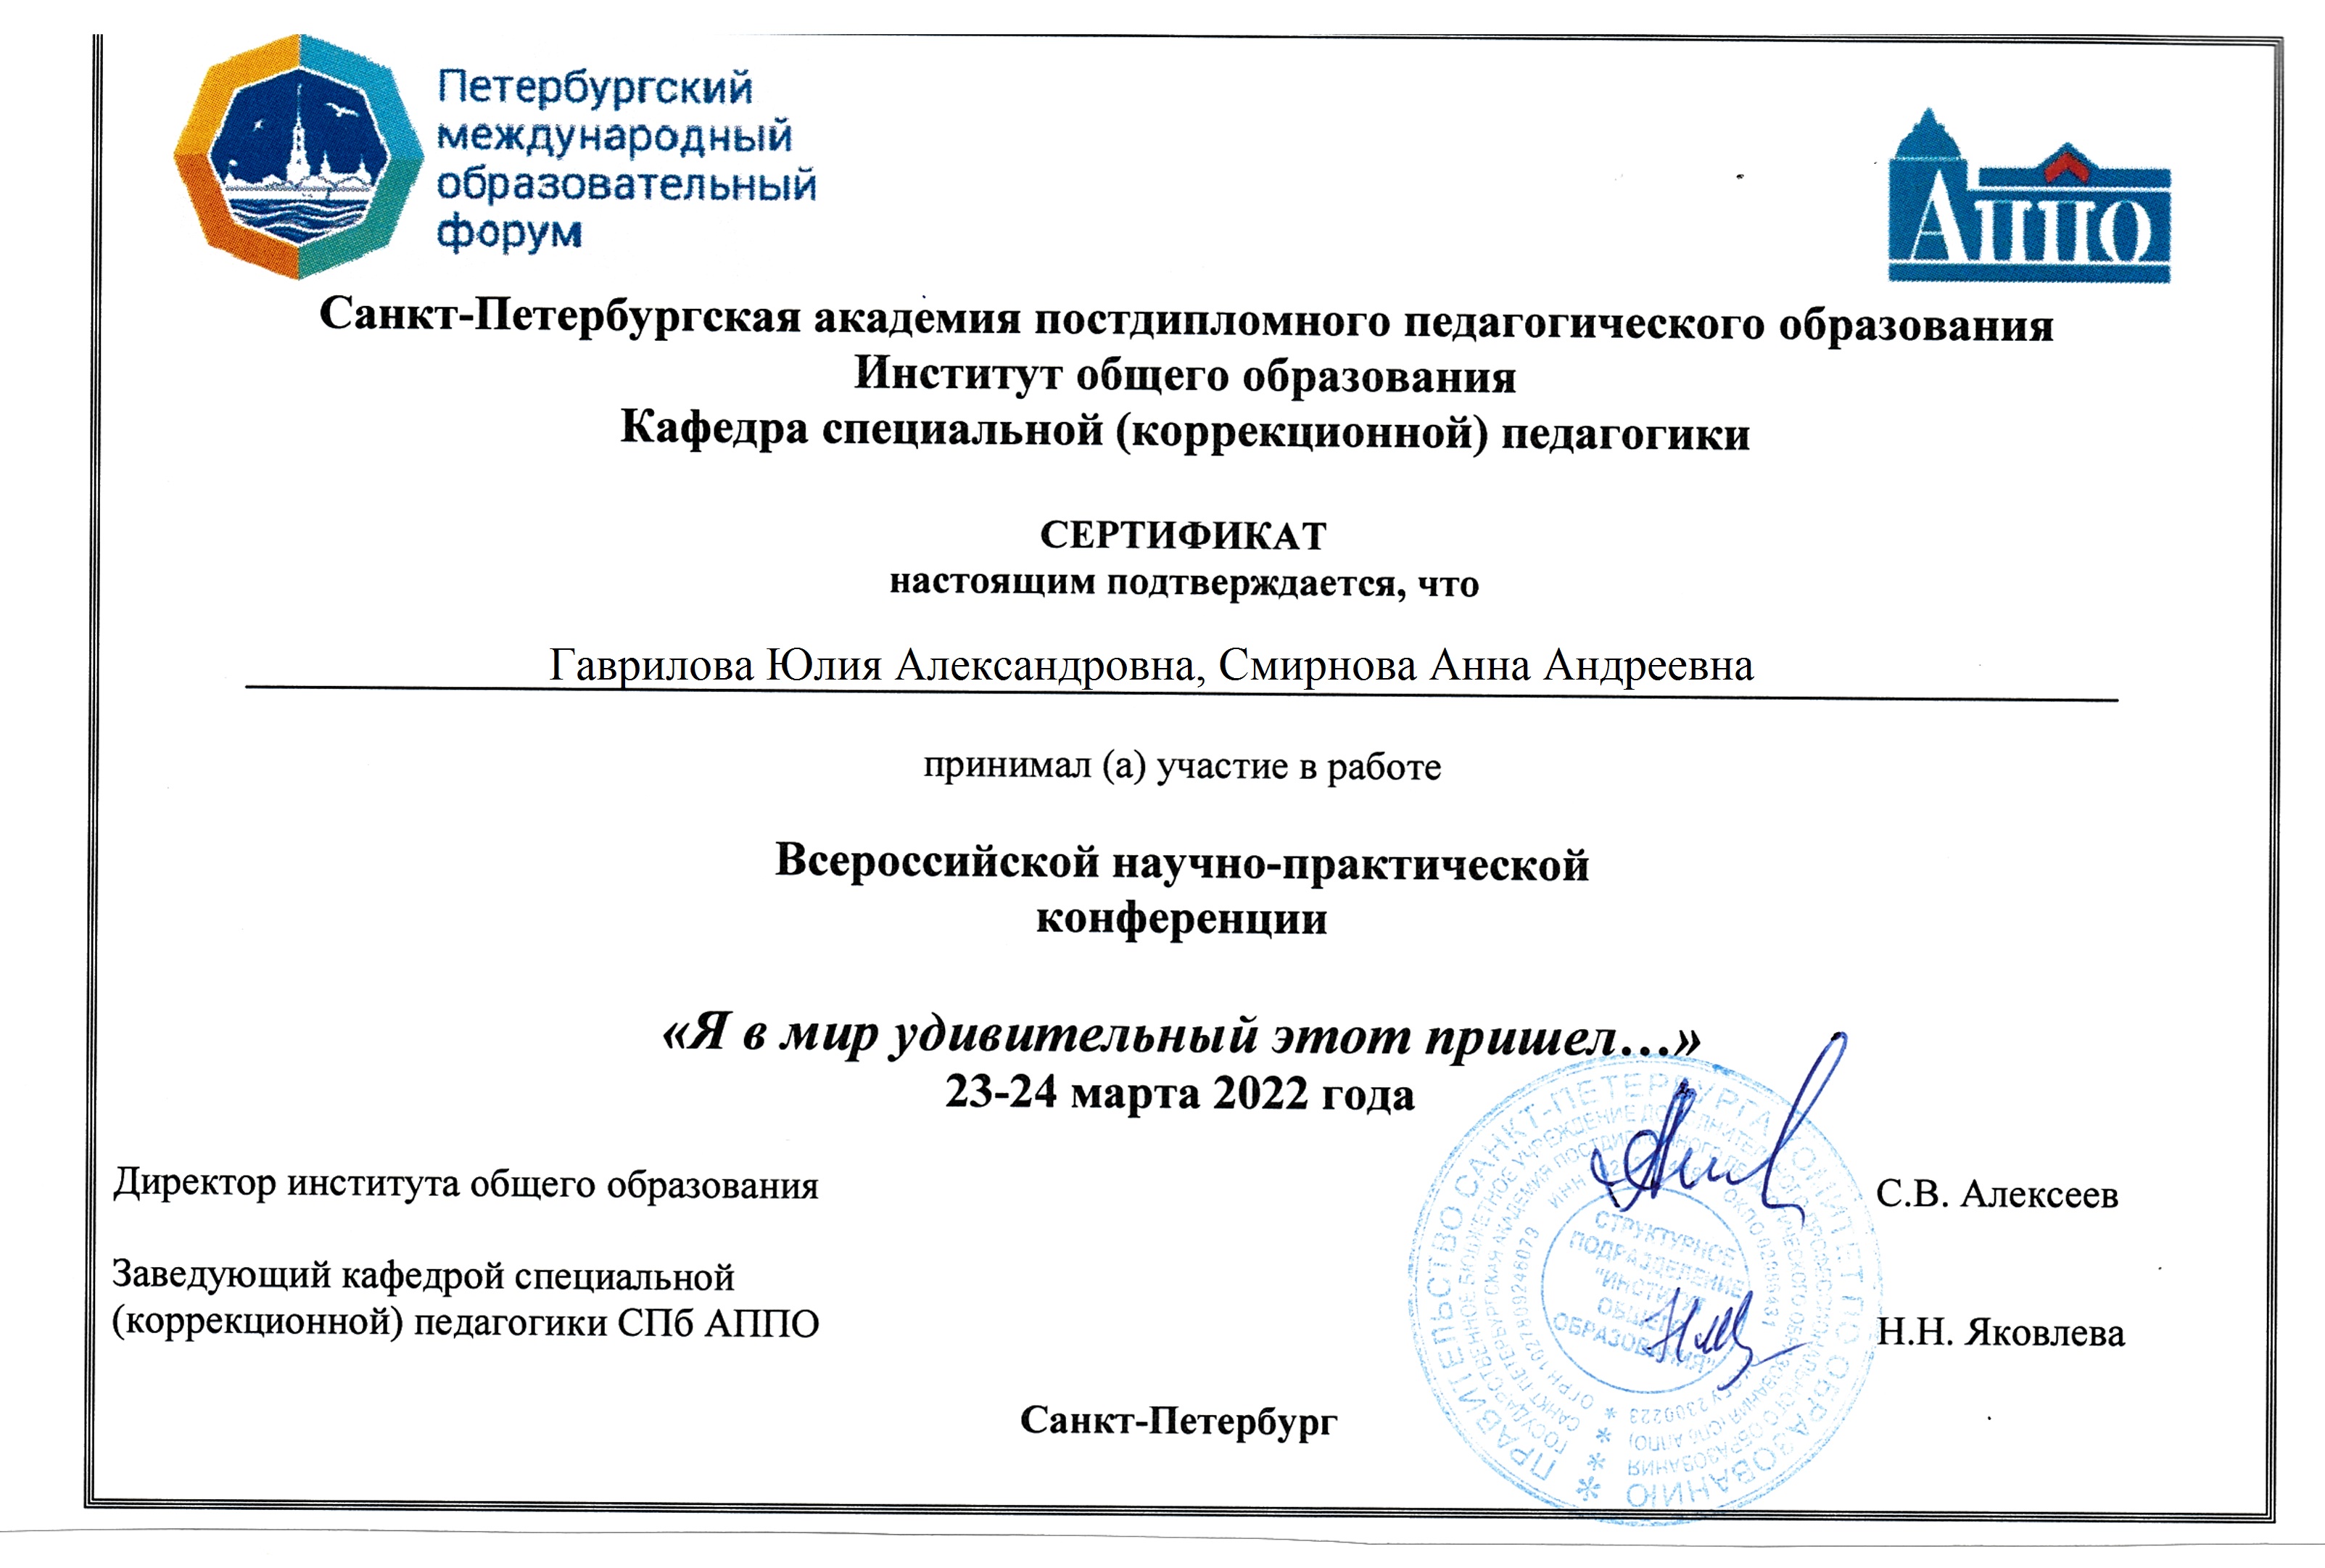 Сертификат Форум 2022 Смирнова Гаврилова